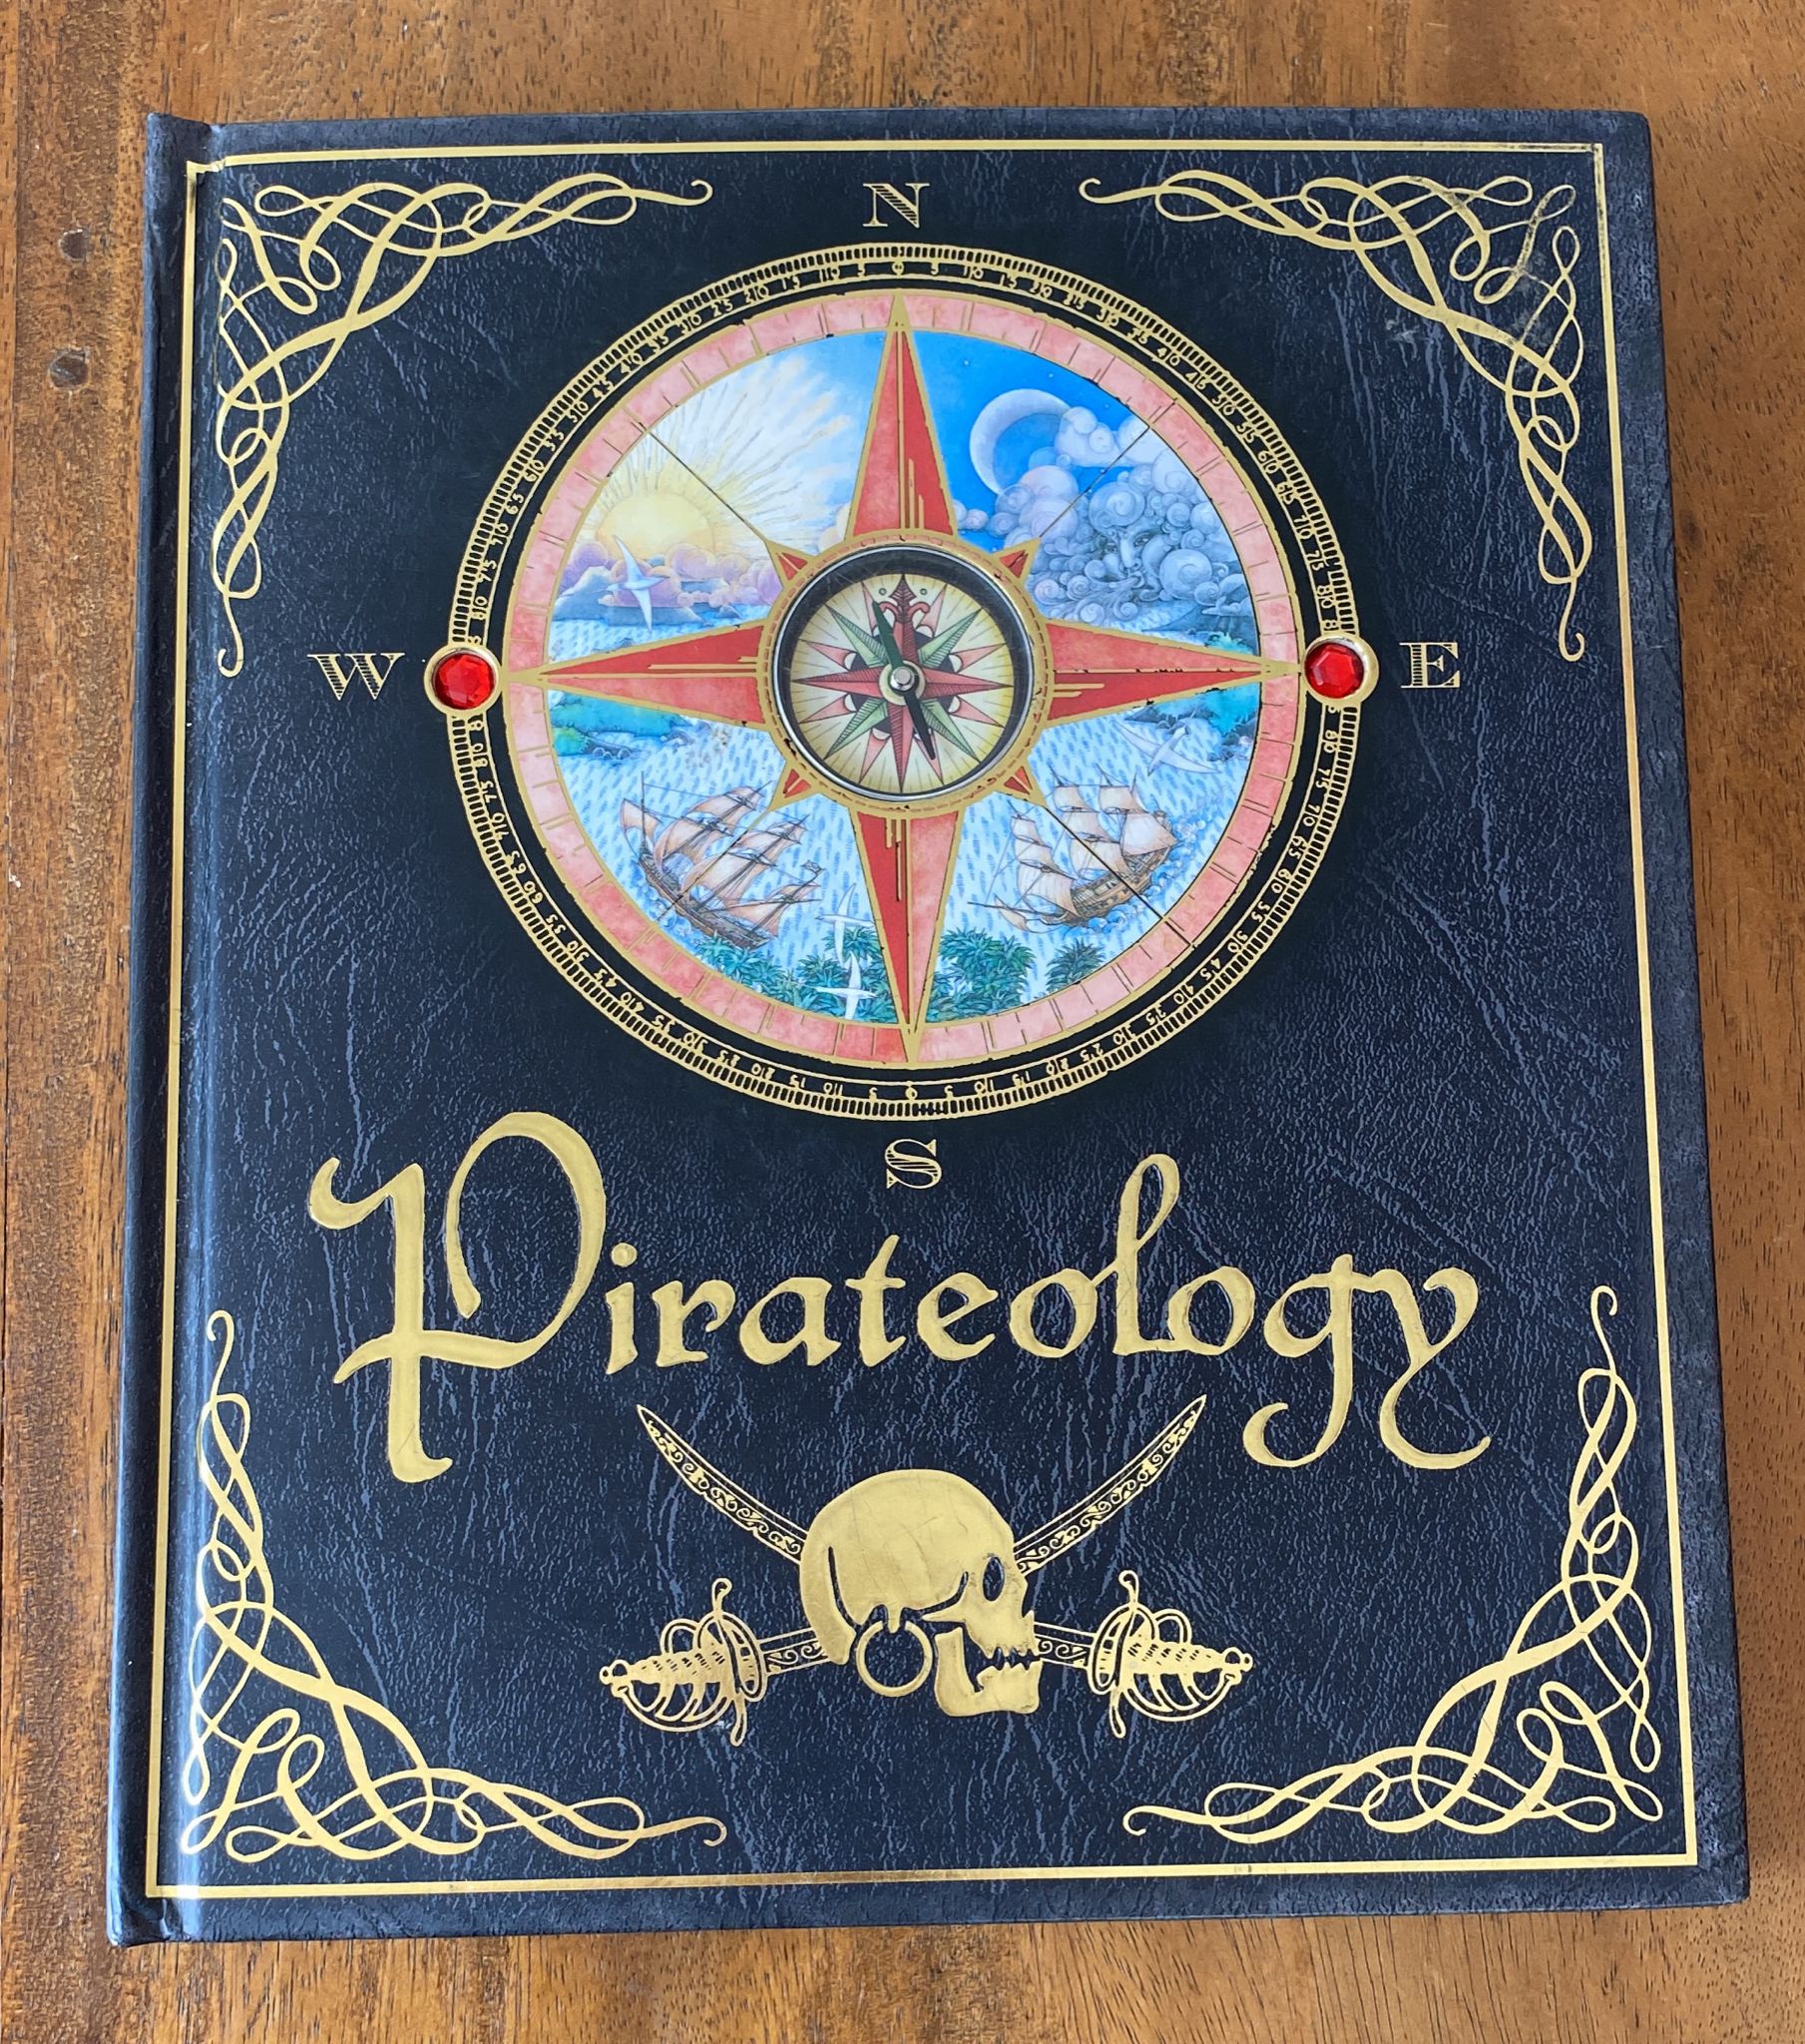 Pirateology. Juego de Mesa. Cuento de Piratas, Libro (31x26)